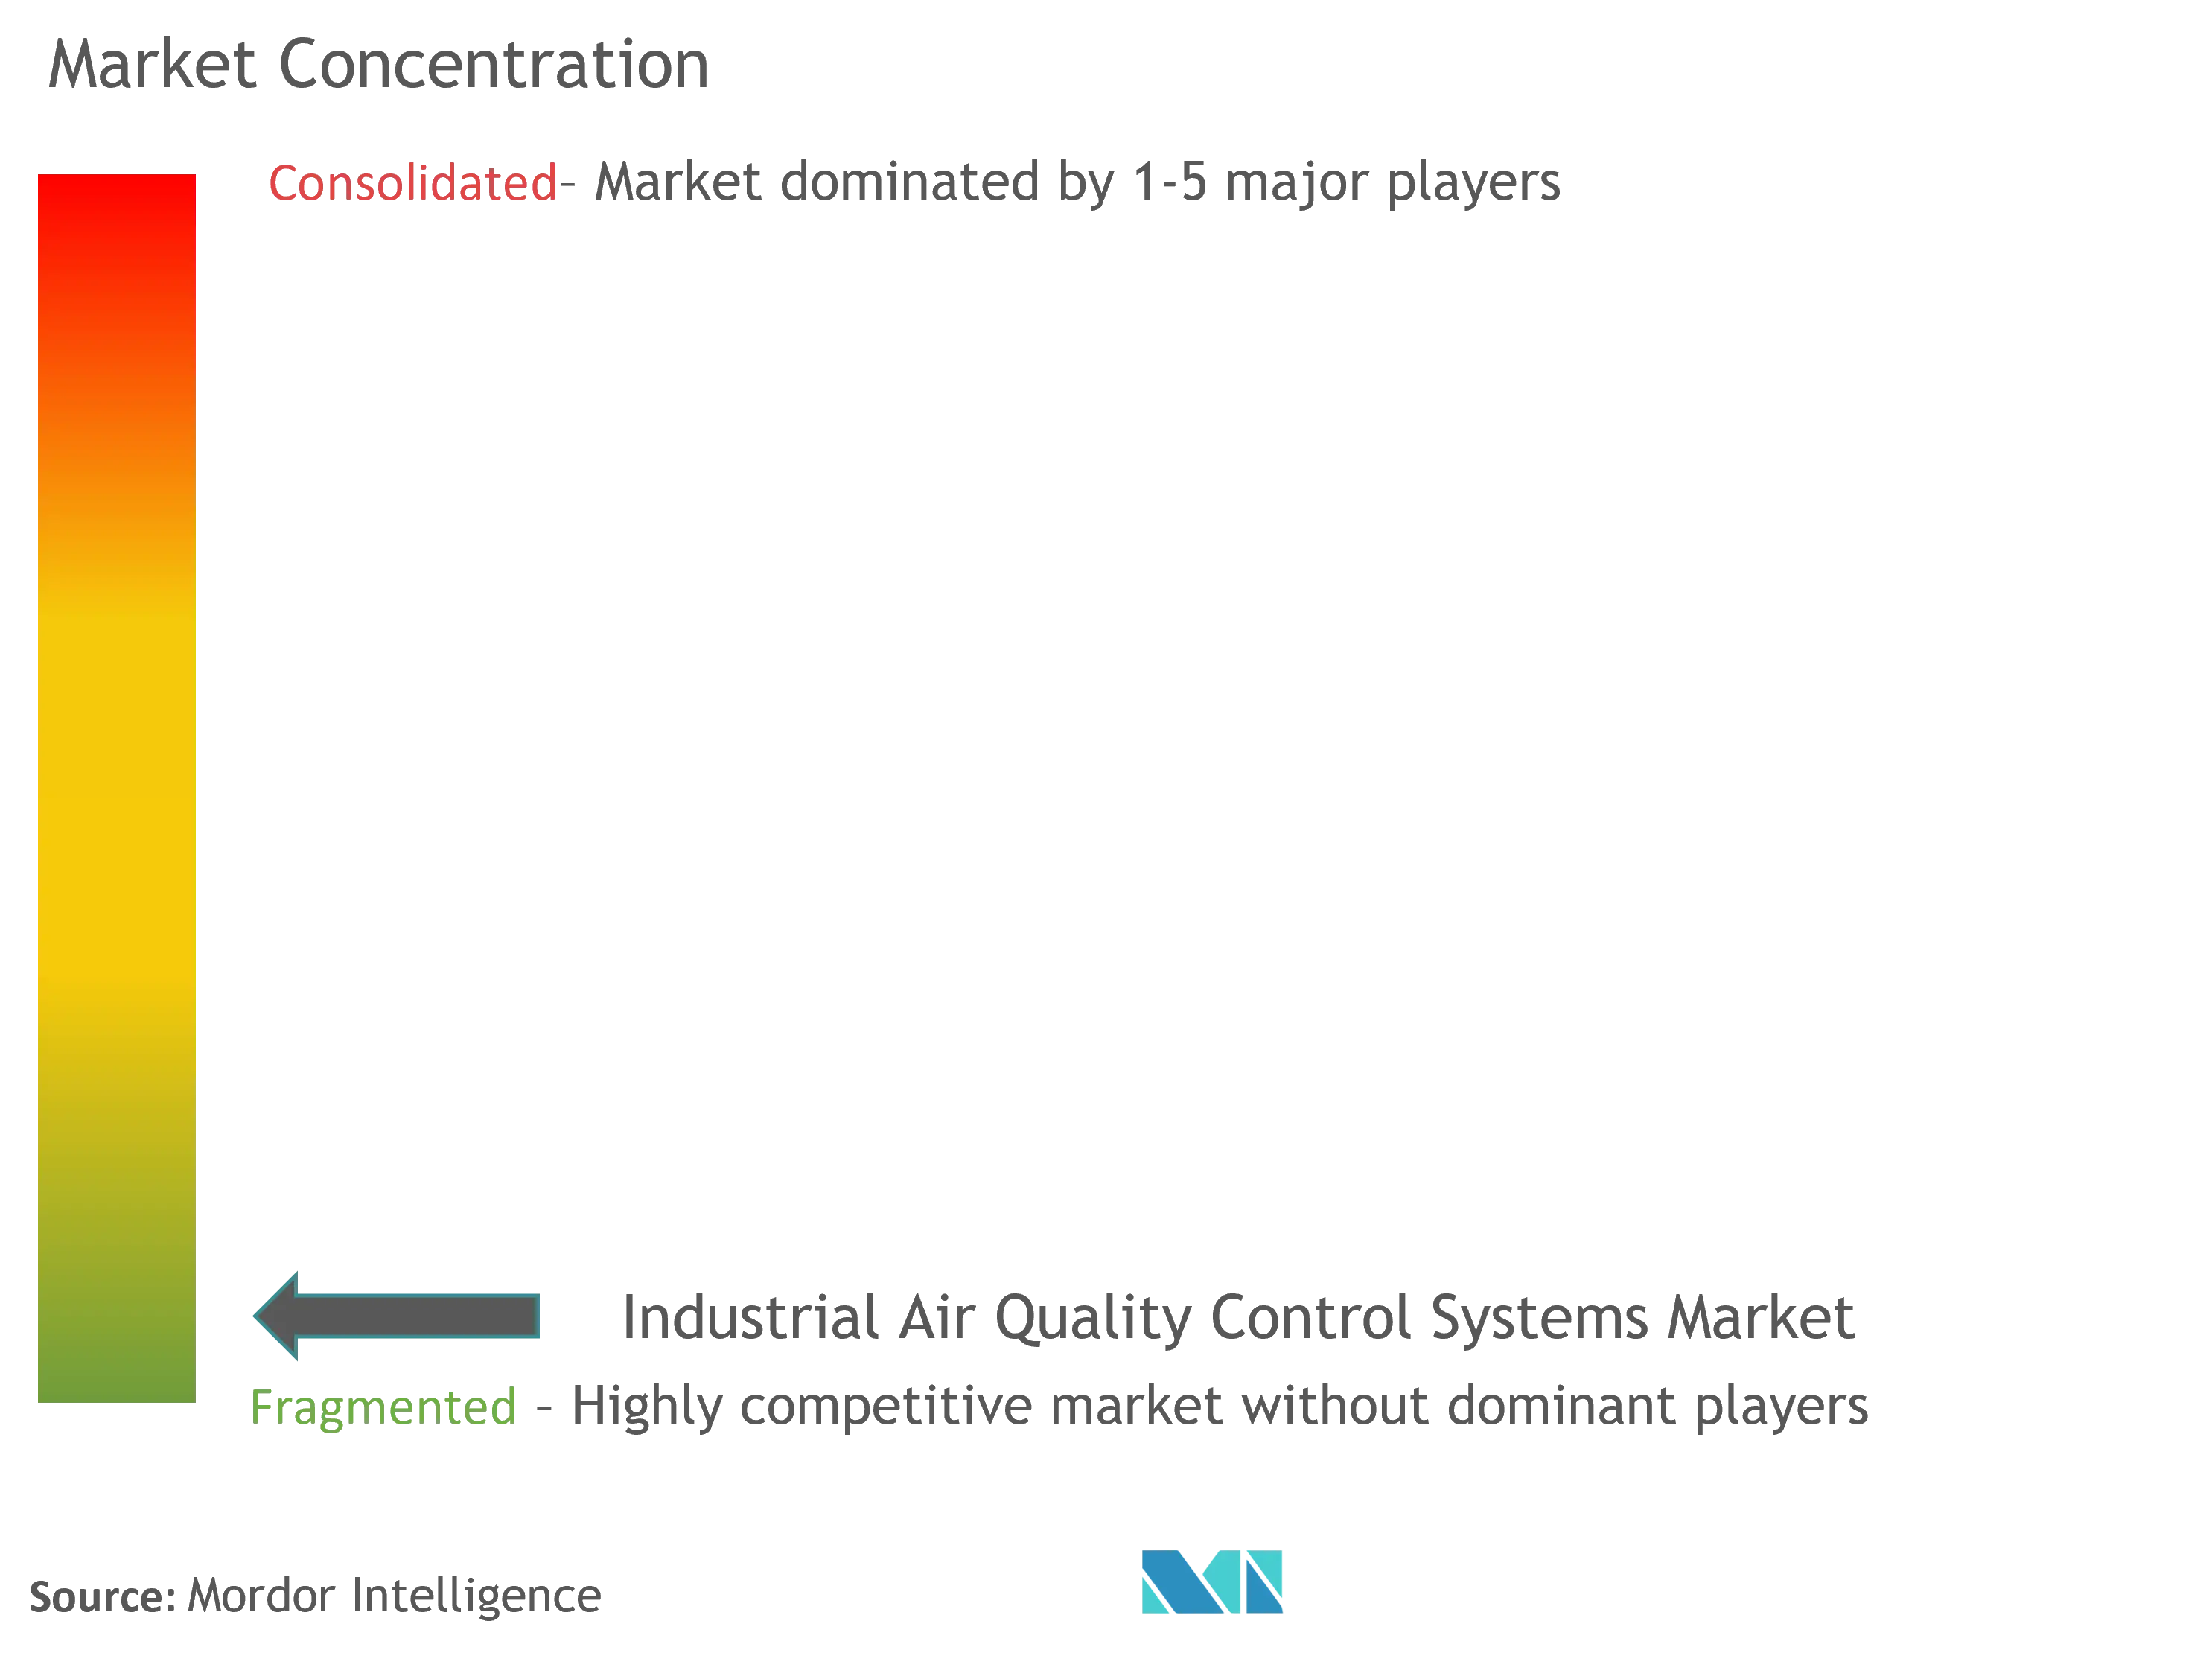 産業用空気品質管理システム市場の集中度